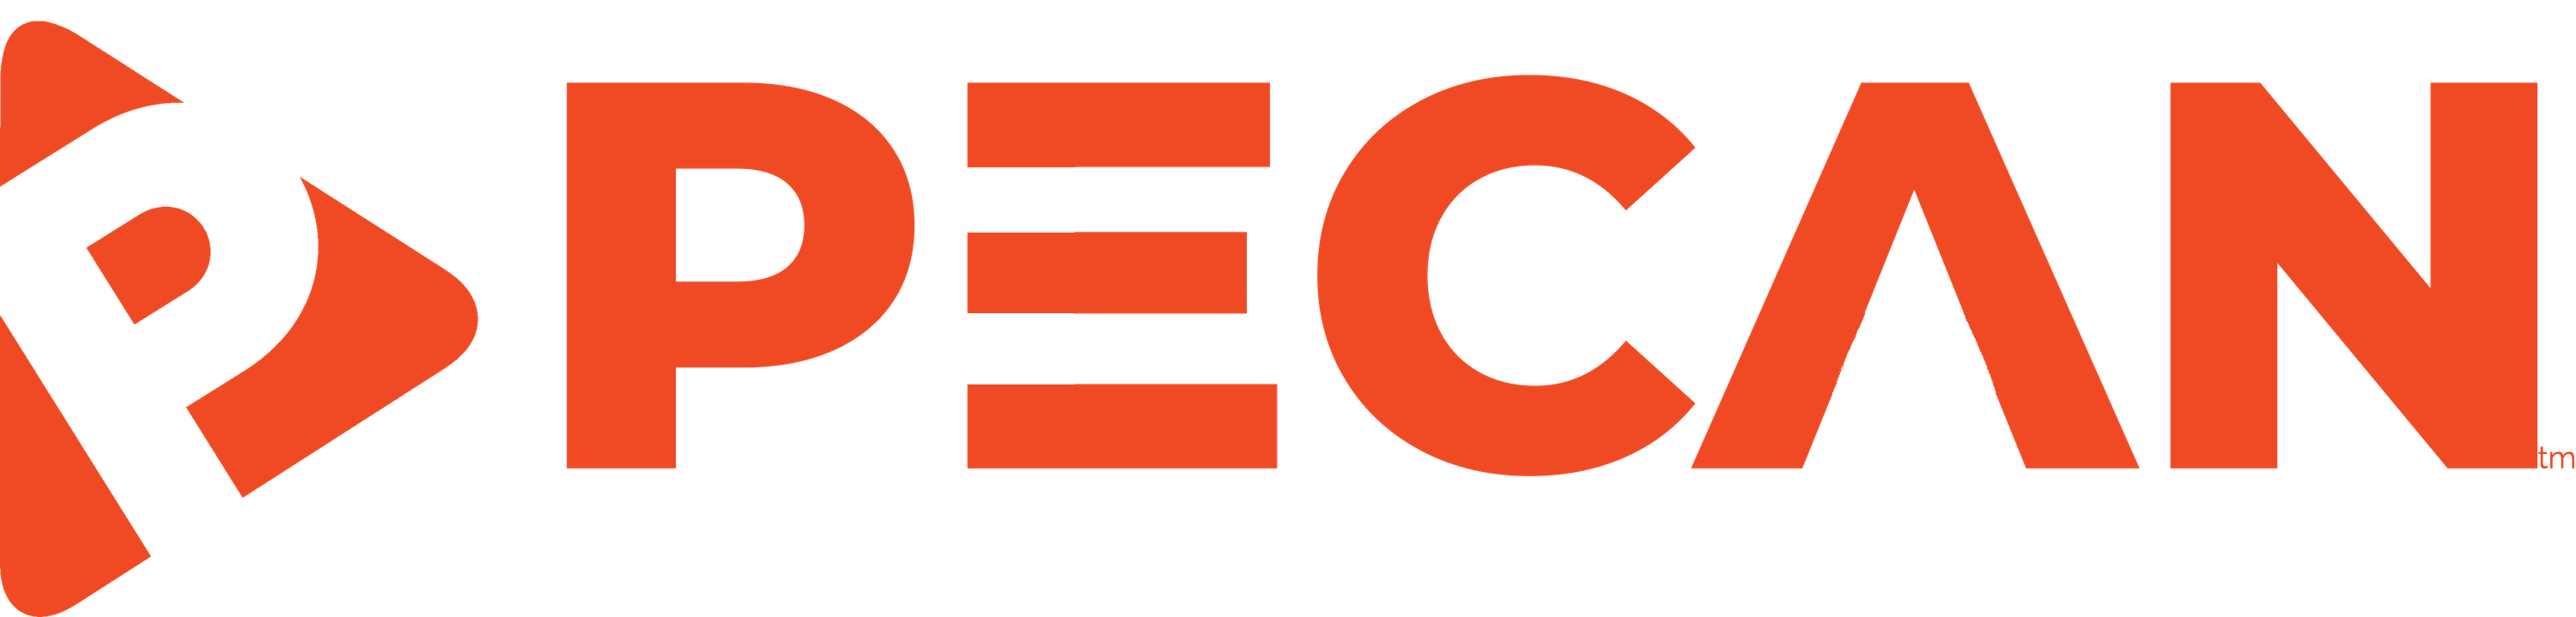 PECAN TV logo